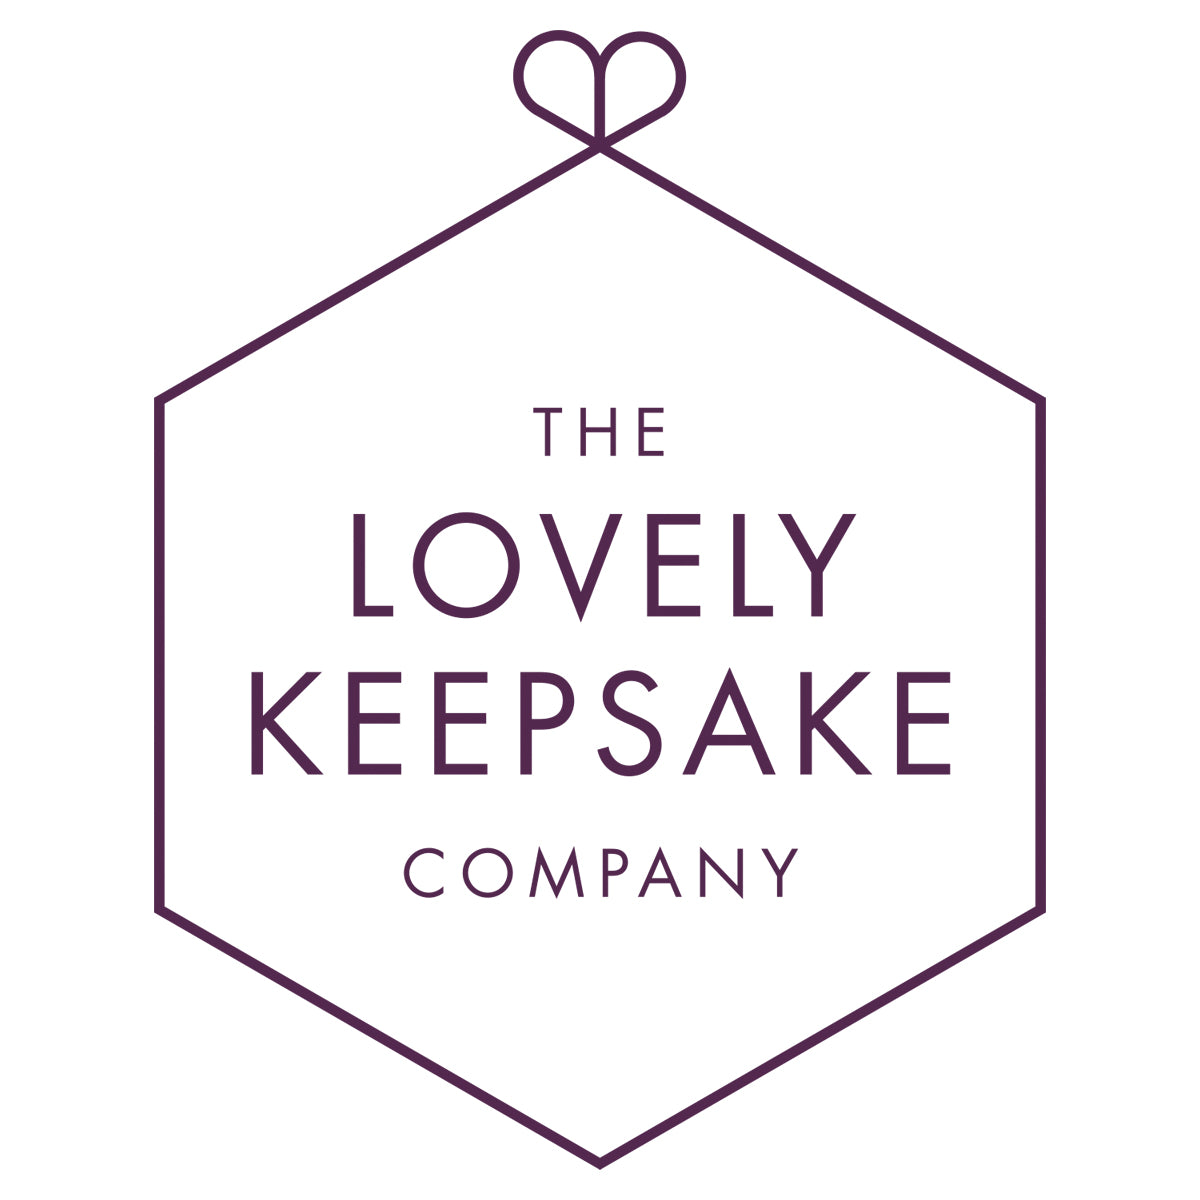 The Lovely Keepsake Company